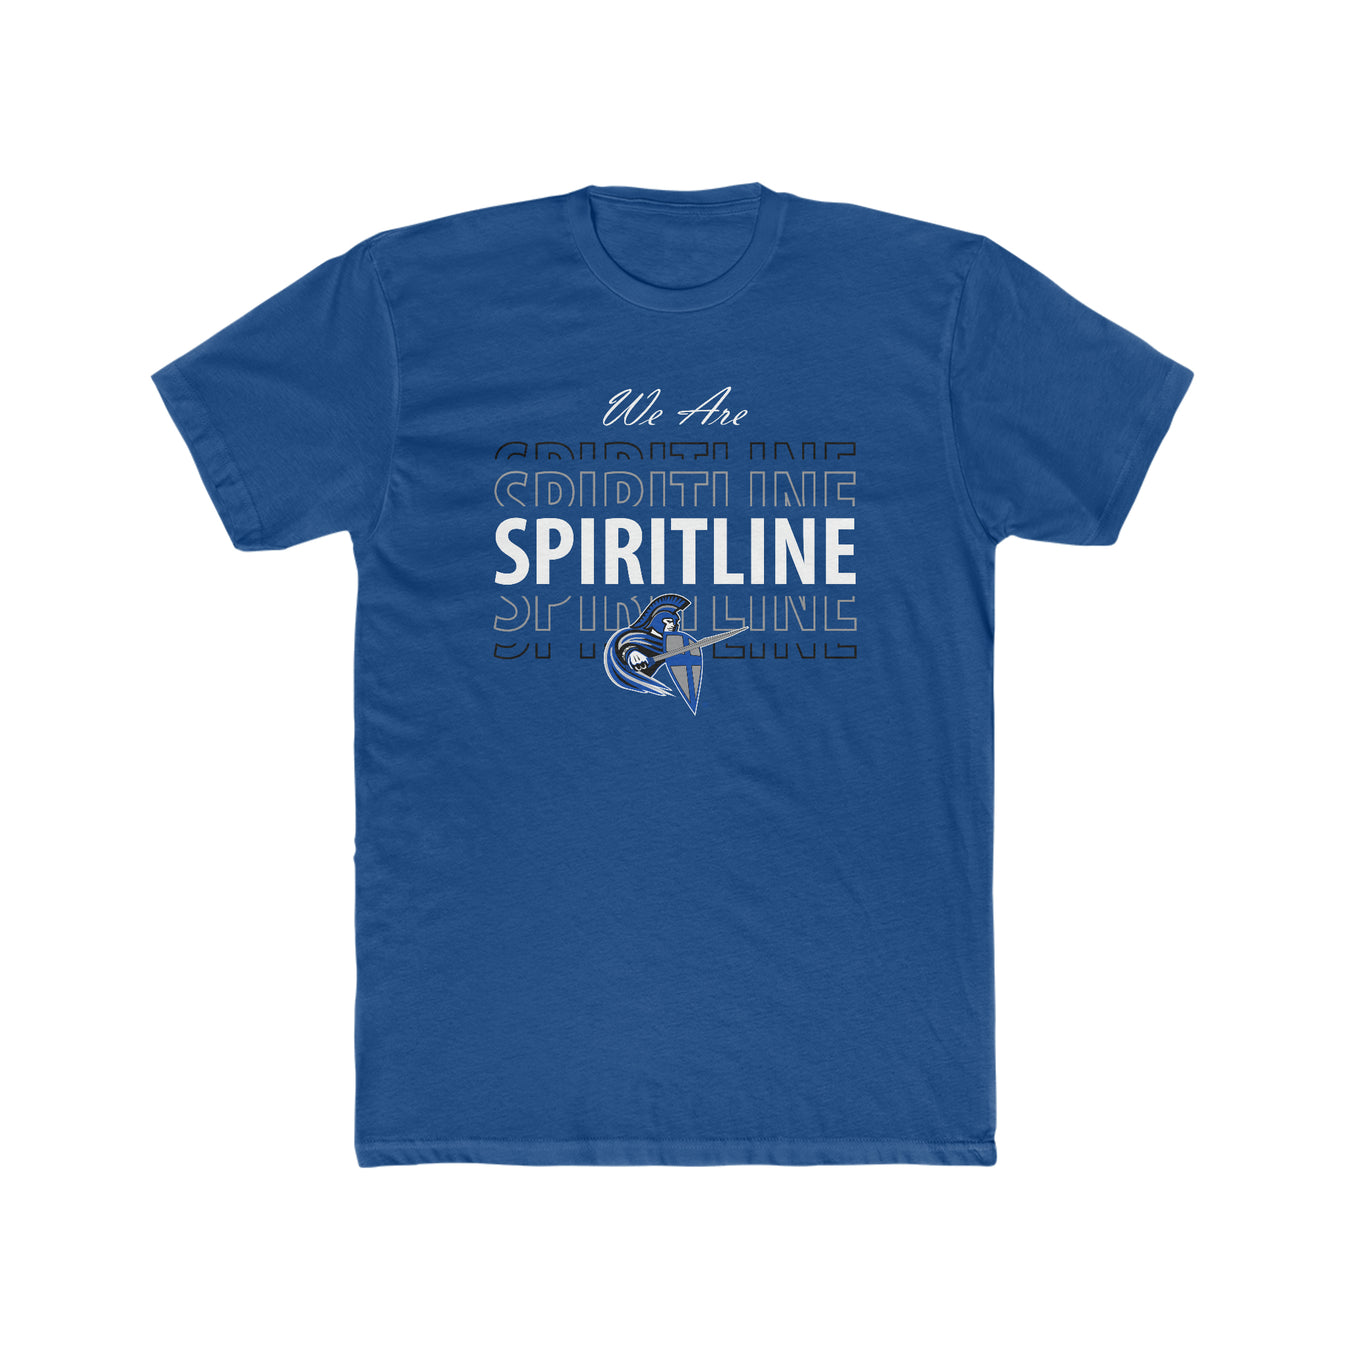 Spiritline Team Store